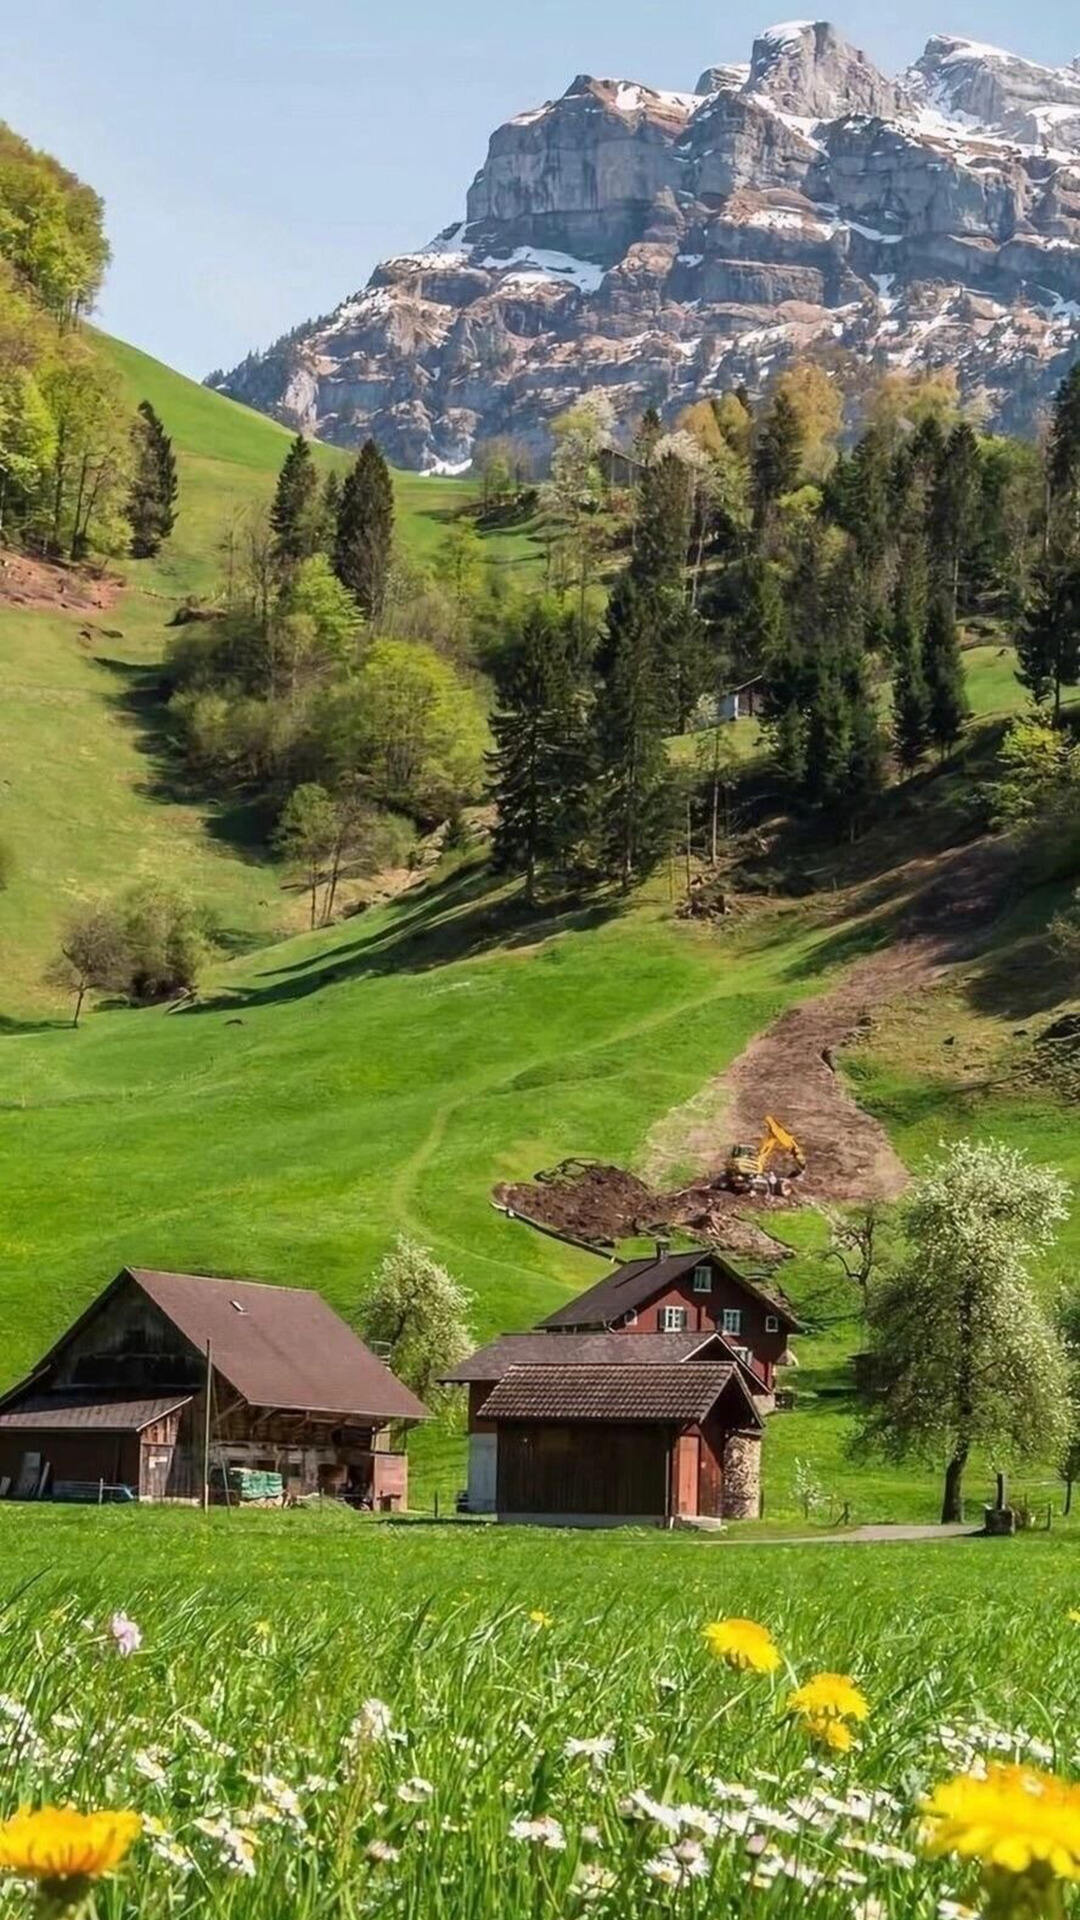 绿树，青草，小野花，雪山下的零散木屋唯美风光景色手机壁纸图片